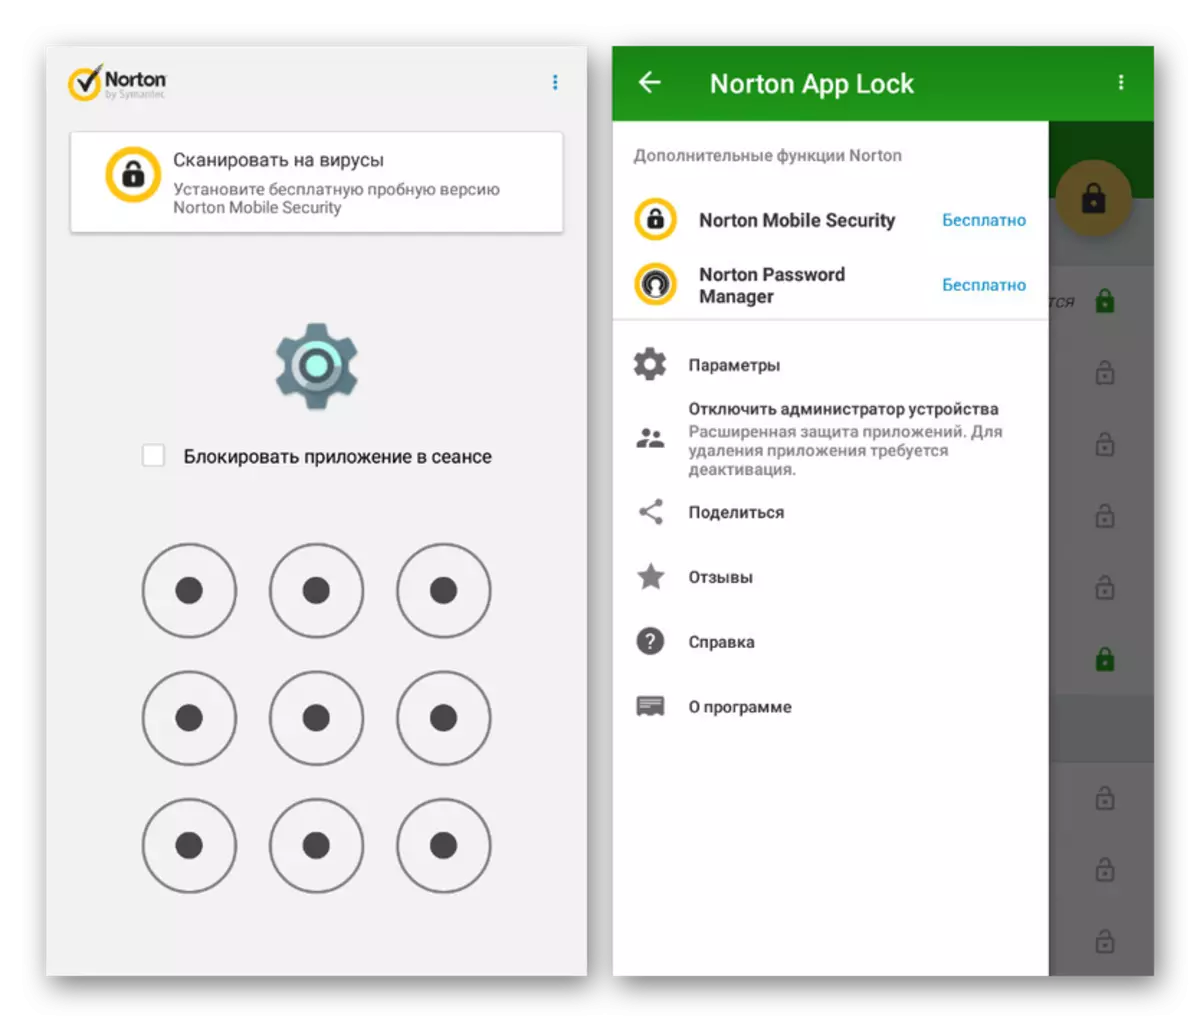 Pengesahan di Norton App Lock pada Android